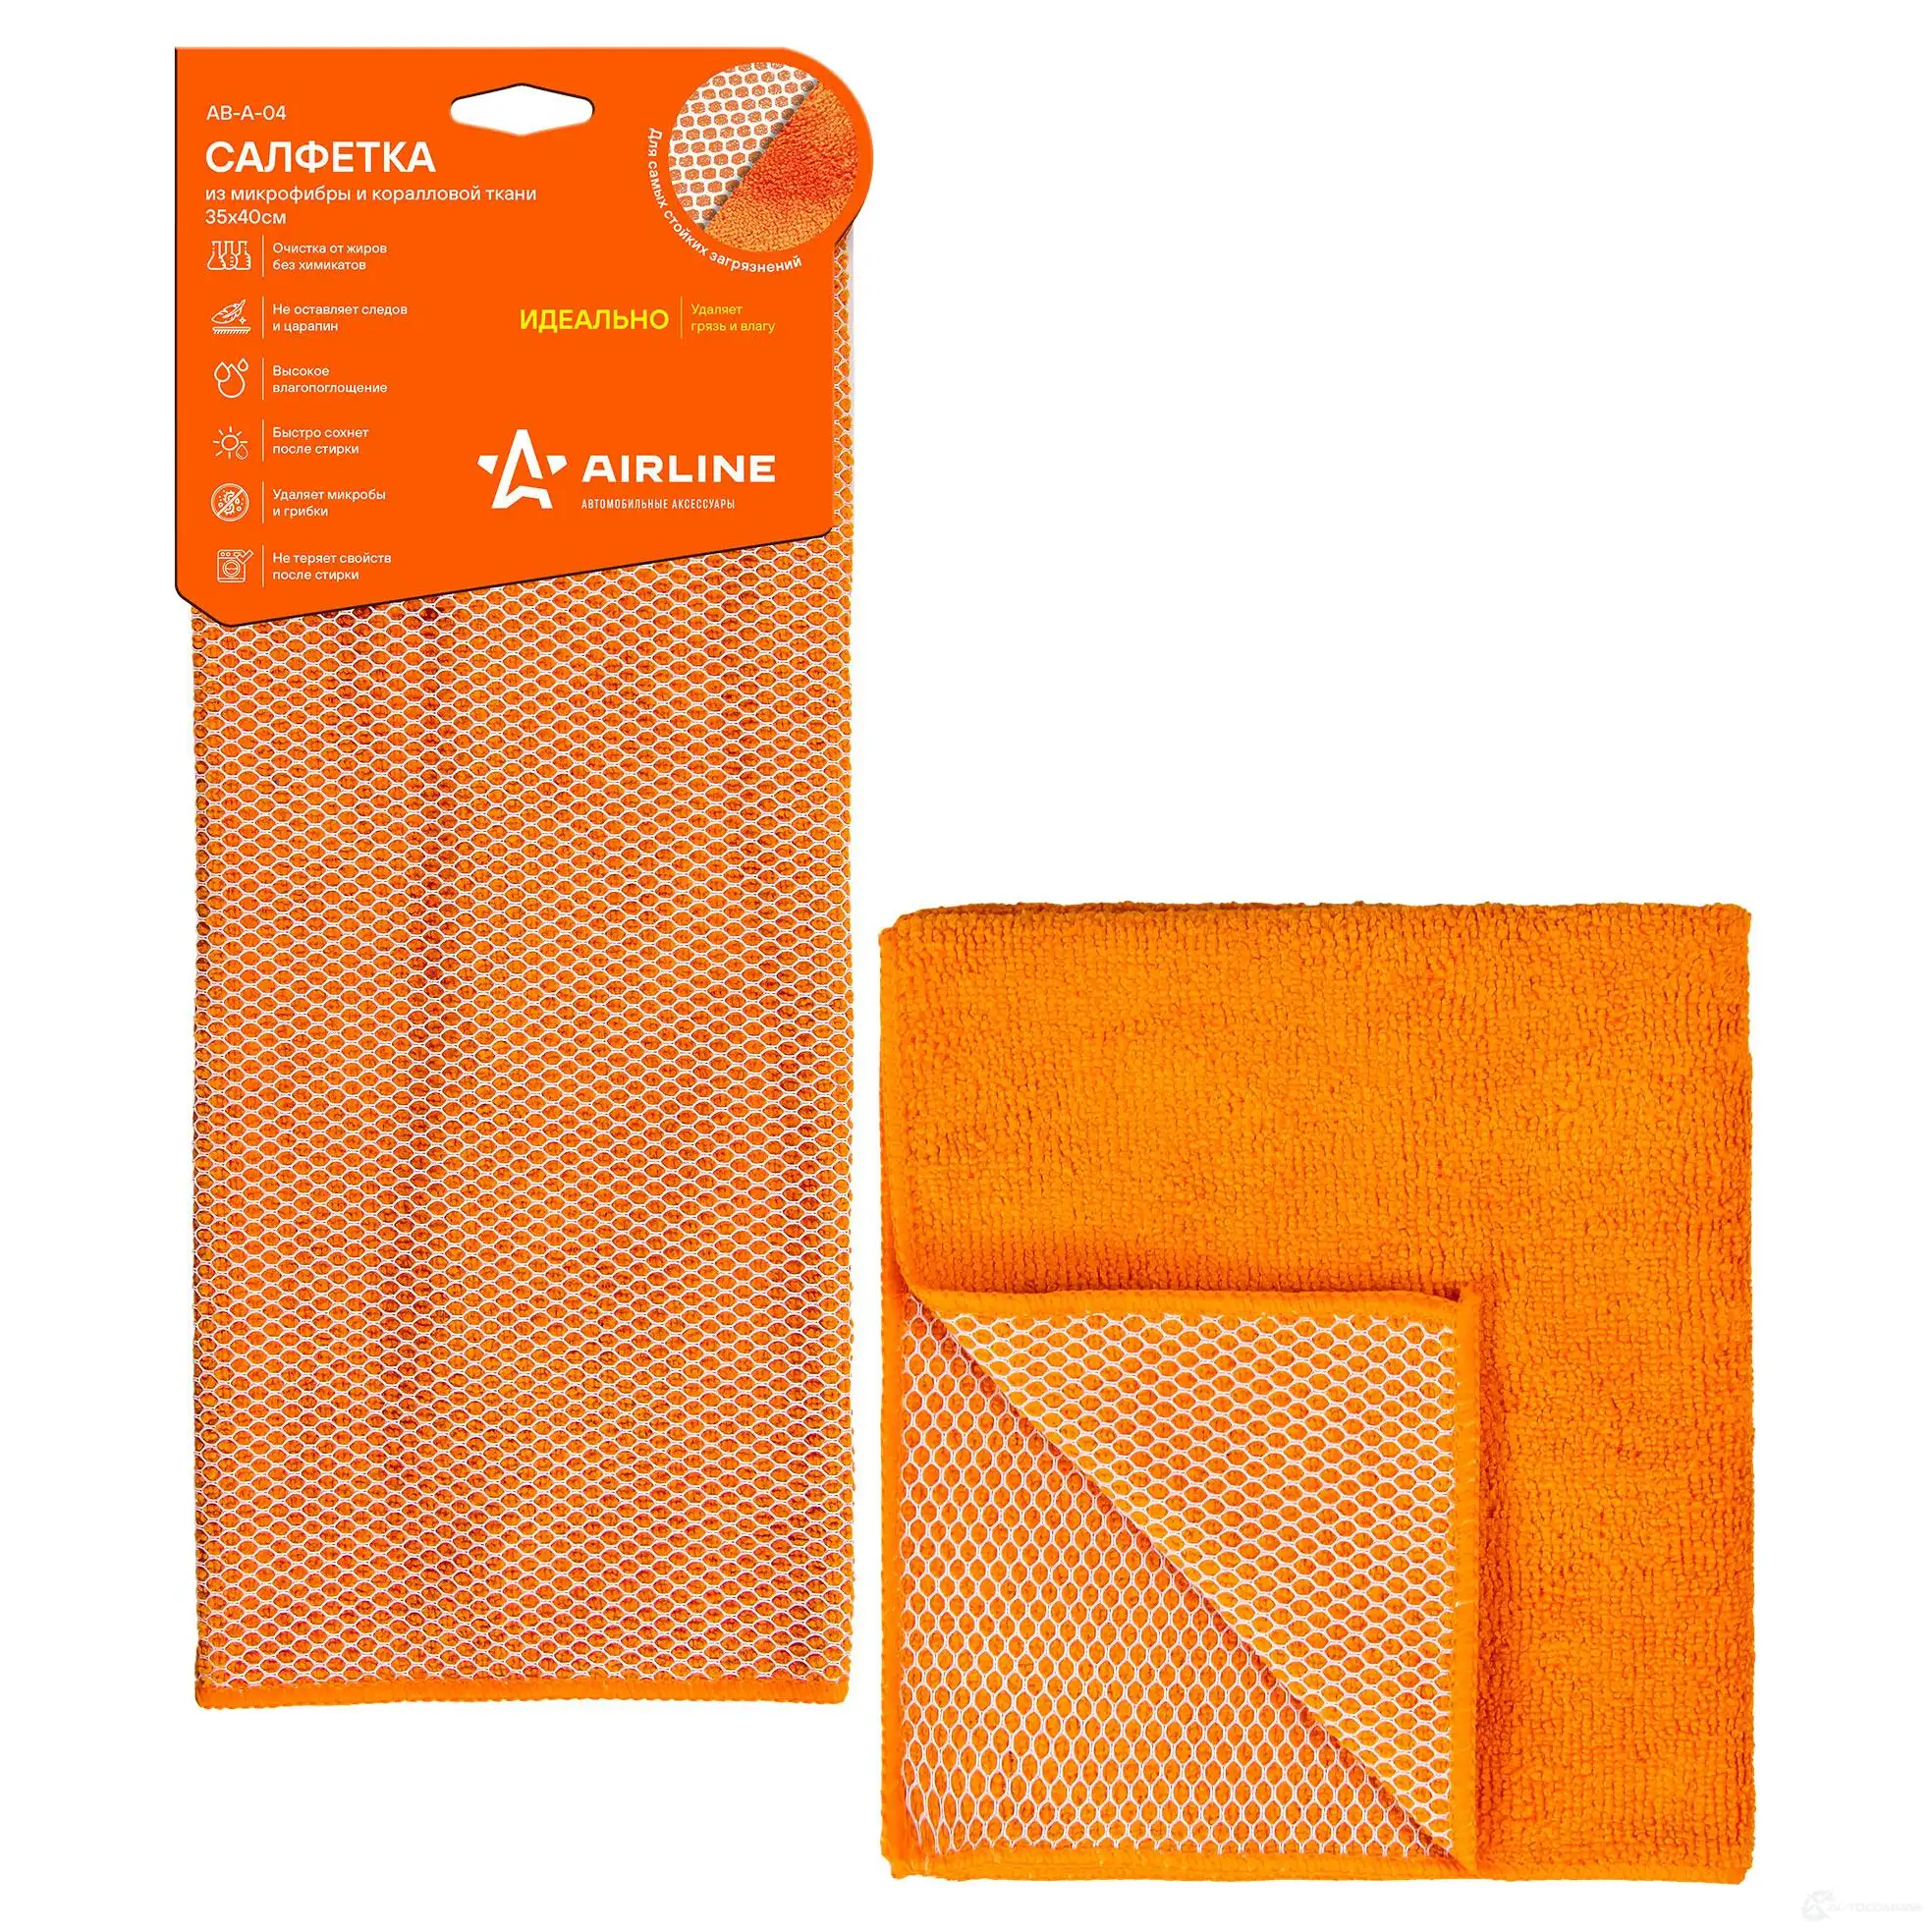 Салфетка из микрофибры и коралловой ткани оранжевая (35*40 см) AIRLINE 8K9 LXZ 1438172879 aba04 изображение 0